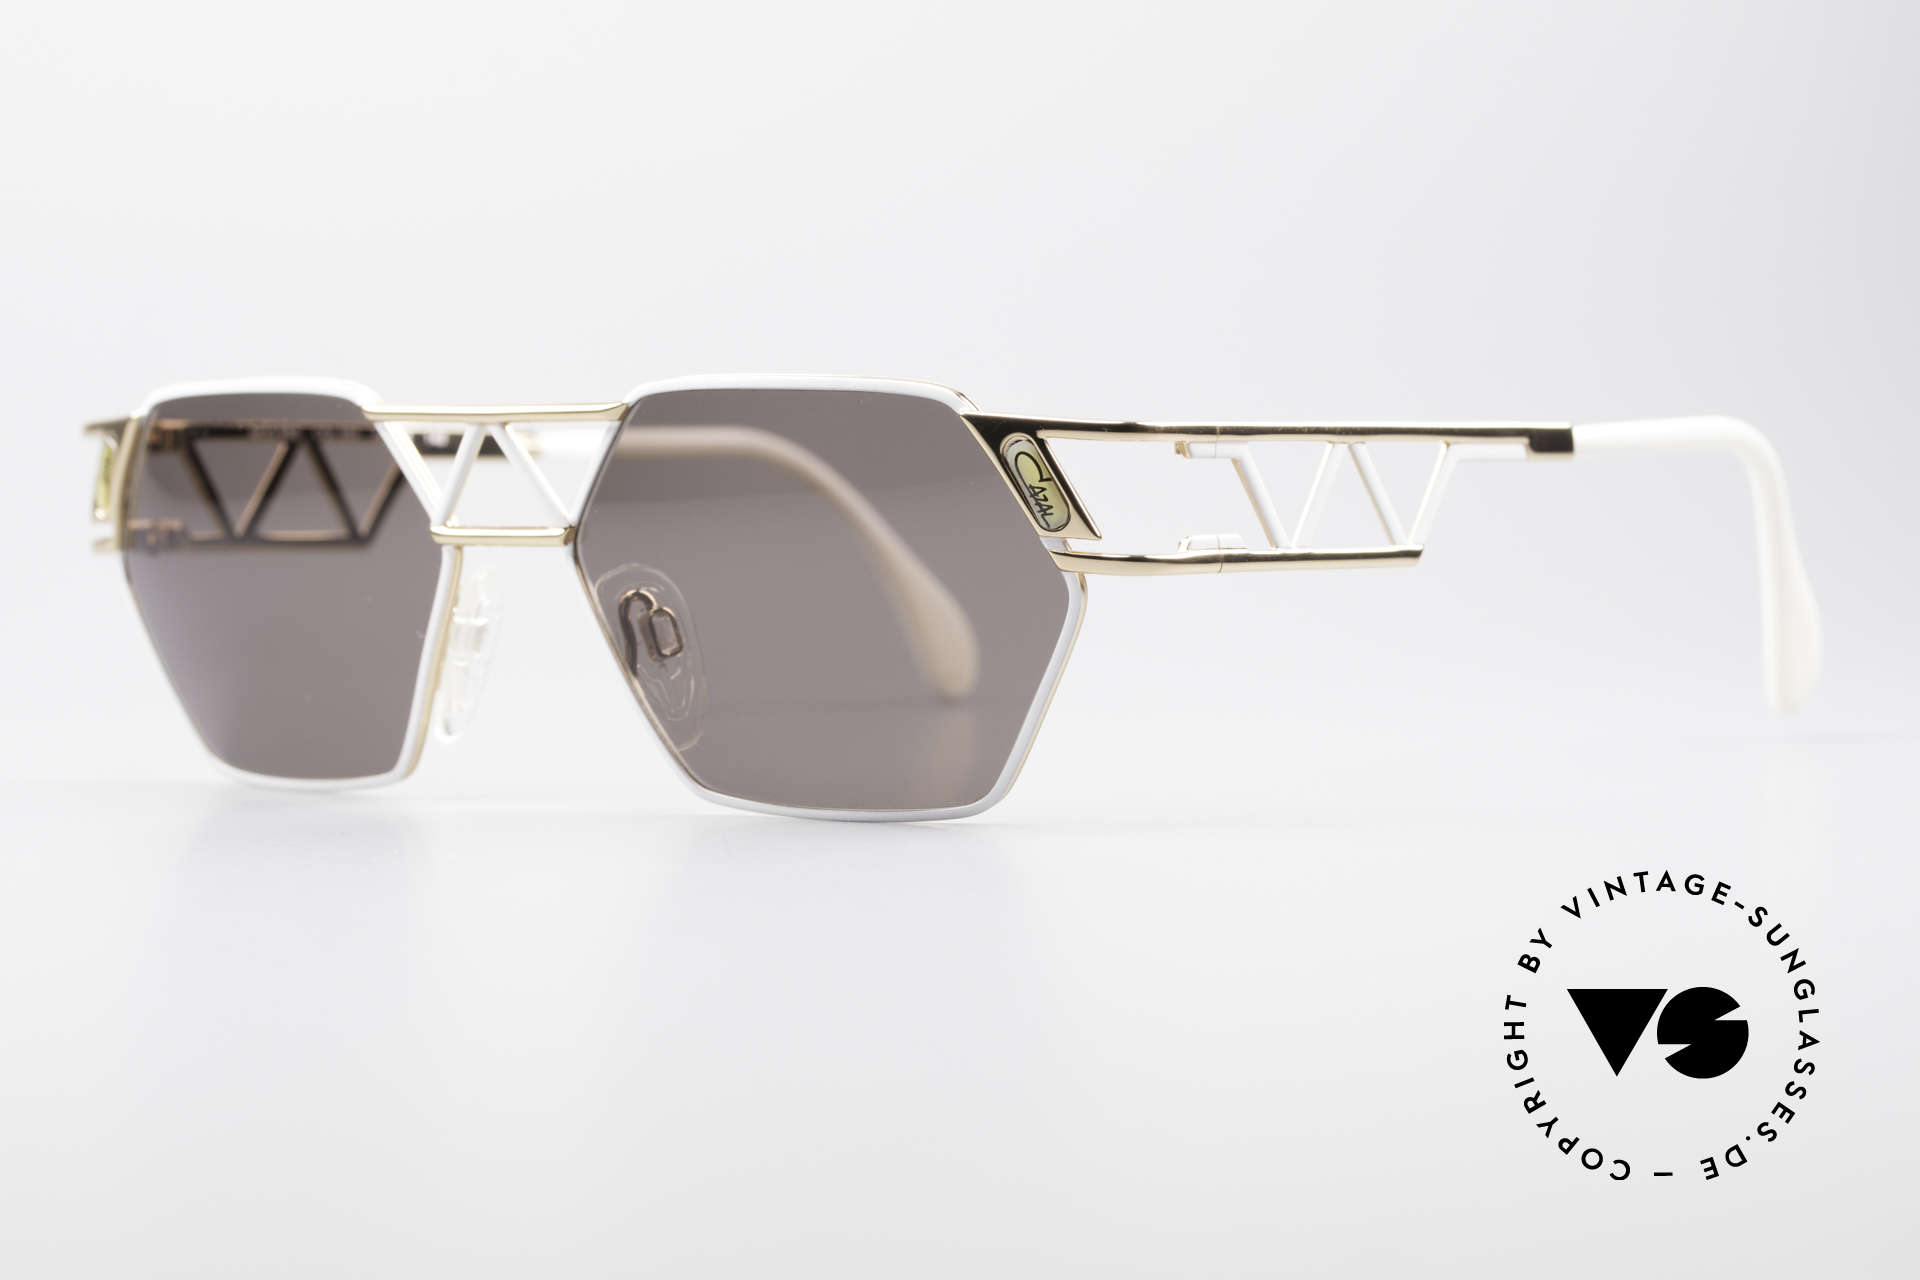 Cazal 960 Echte Designer Sonnenbrille, fühlbare TOP-Qualität (Frame 'made in Germany'), Passend für Herren und Damen